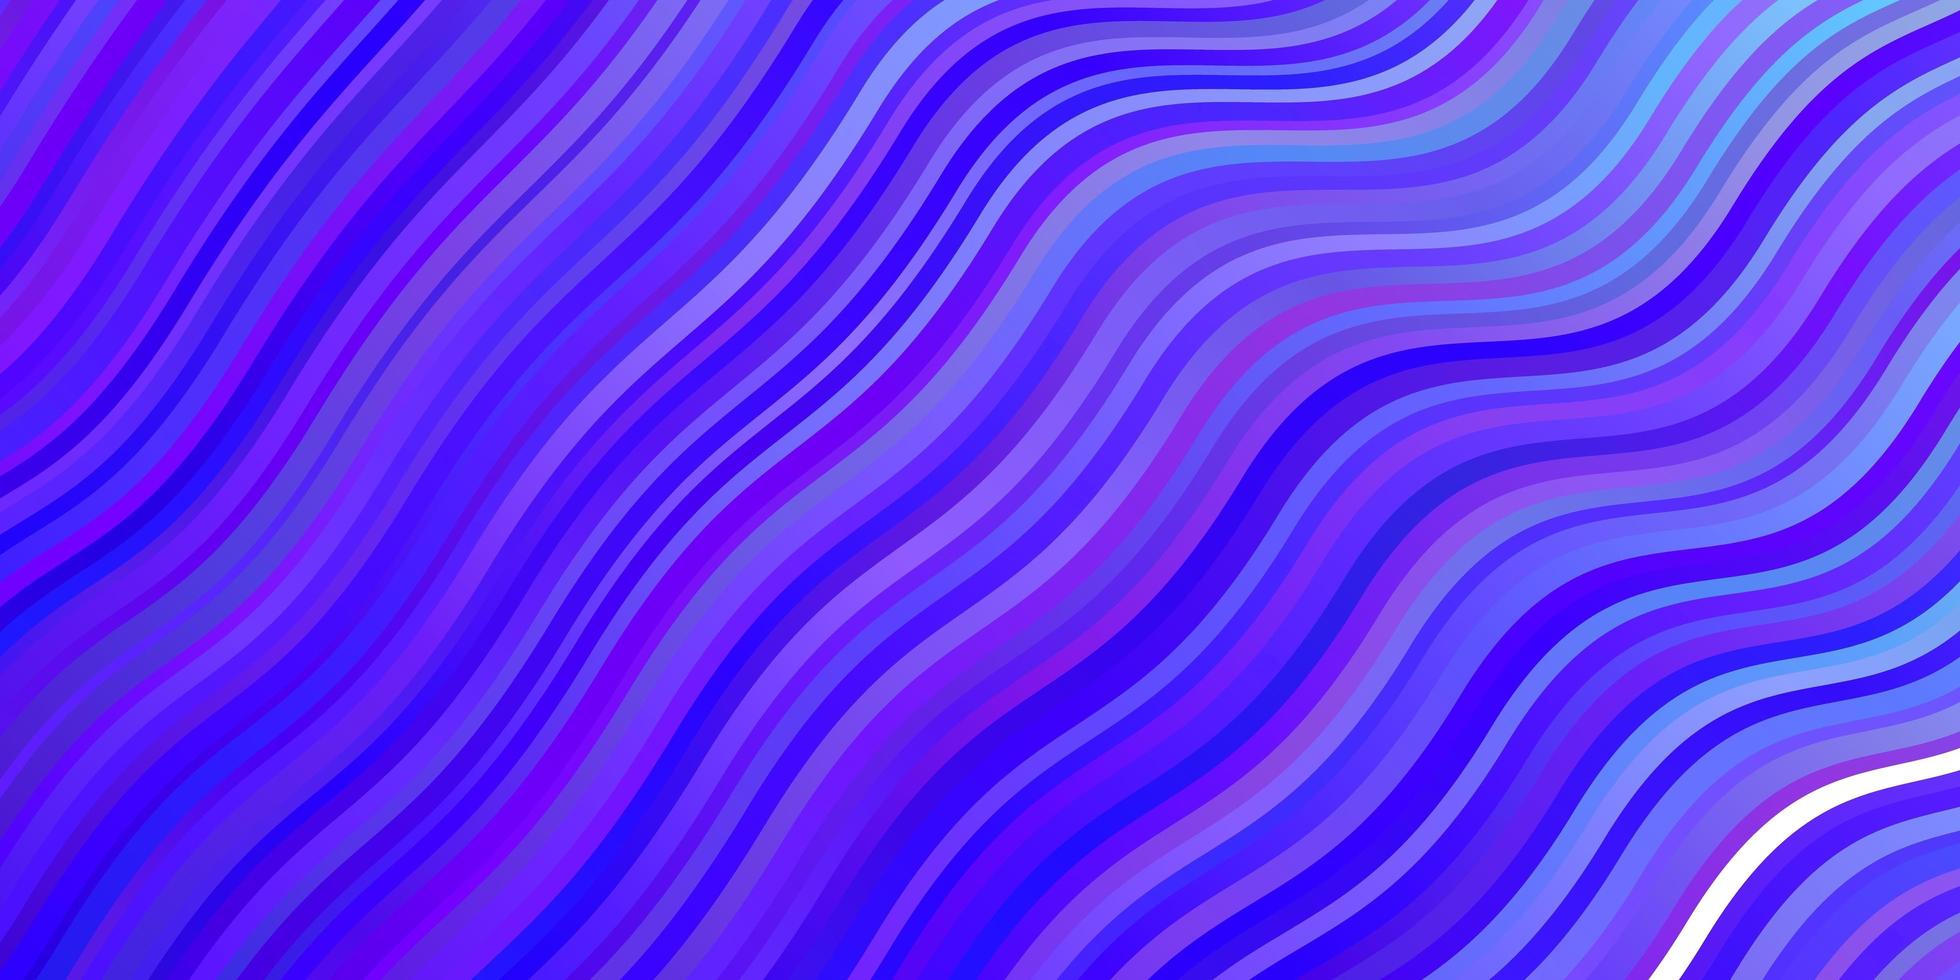 Fondo de vector rosa claro, azul con curvas.